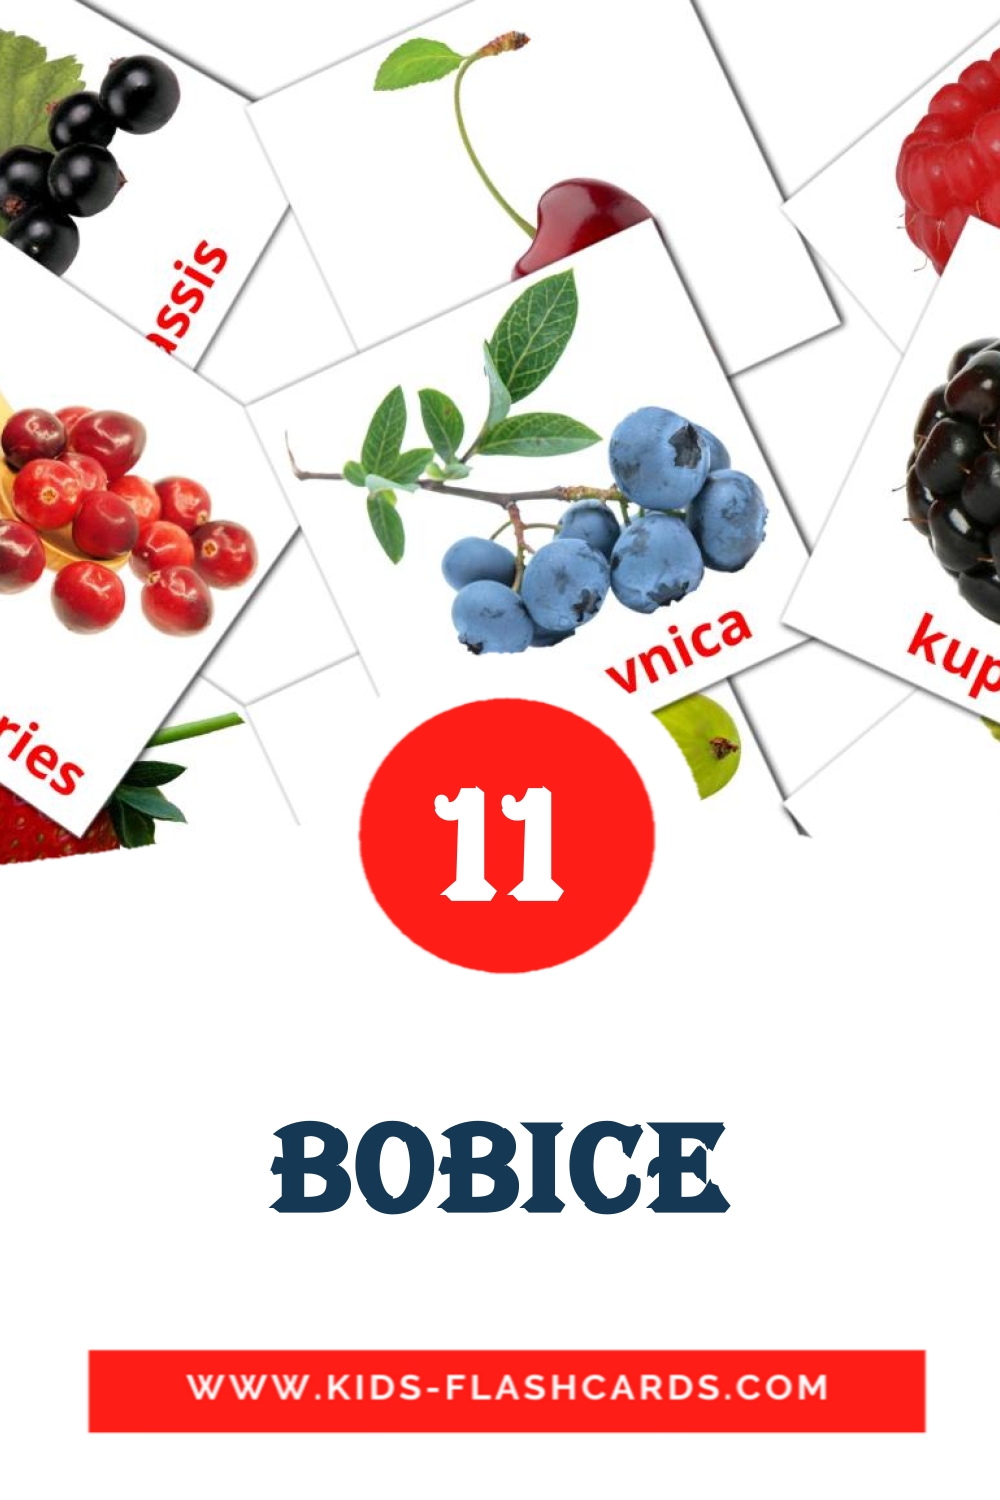 Bobice на боснийском для Детского Сада (11 карточек)